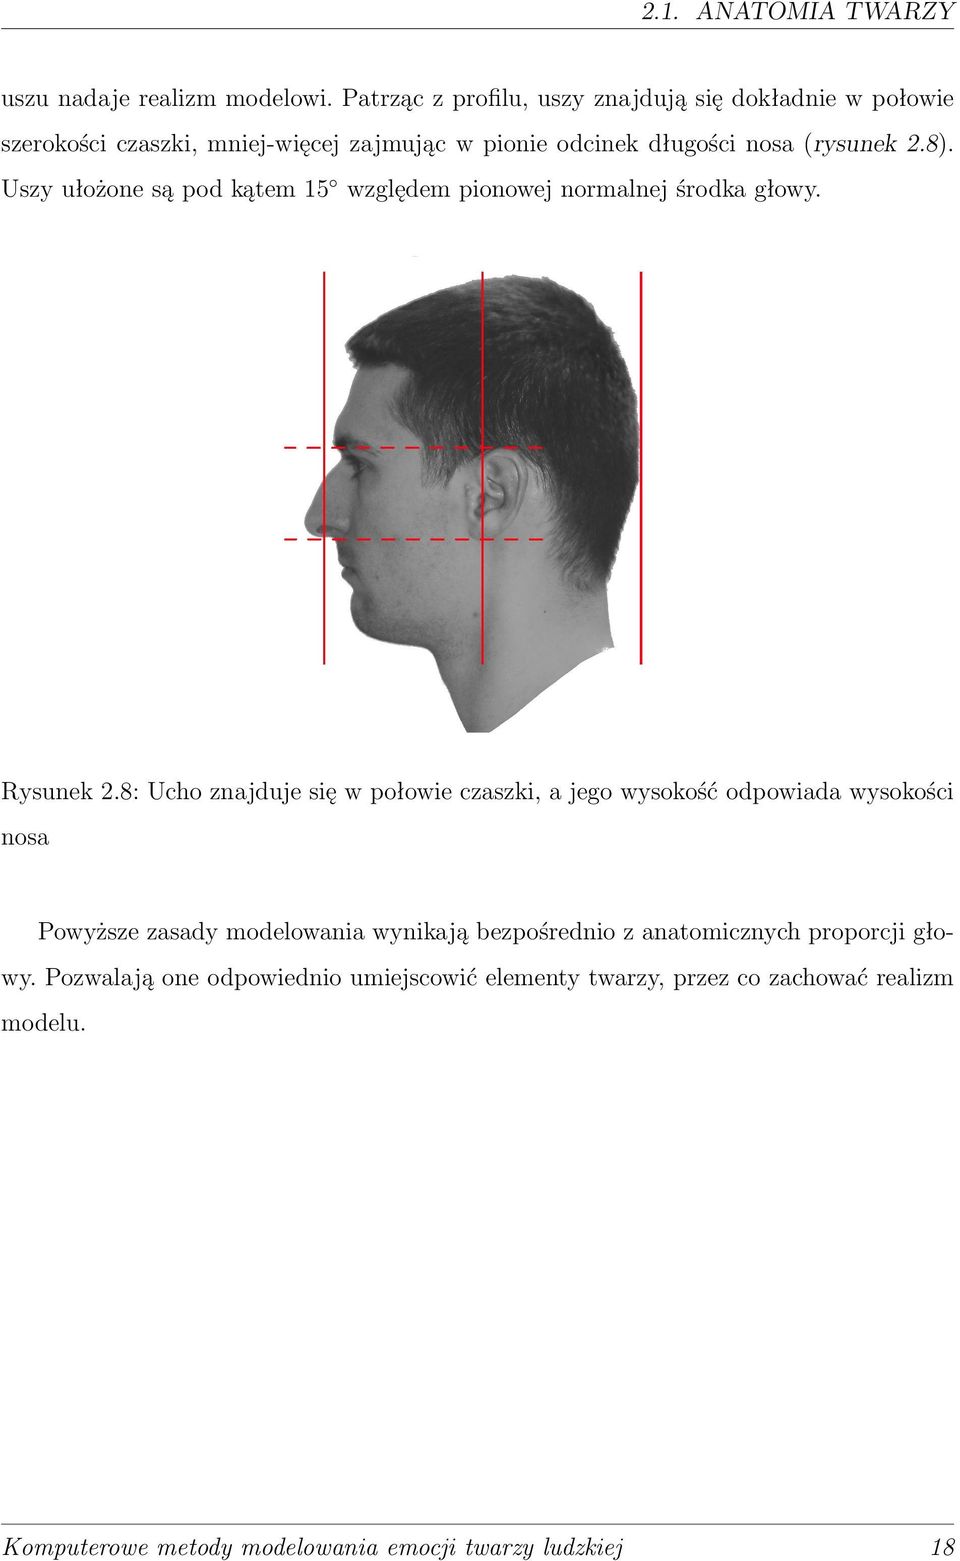 Uszy ułożone są pod kątem 15 względem pionowej normalnej środka głowy. Rysunek 2.